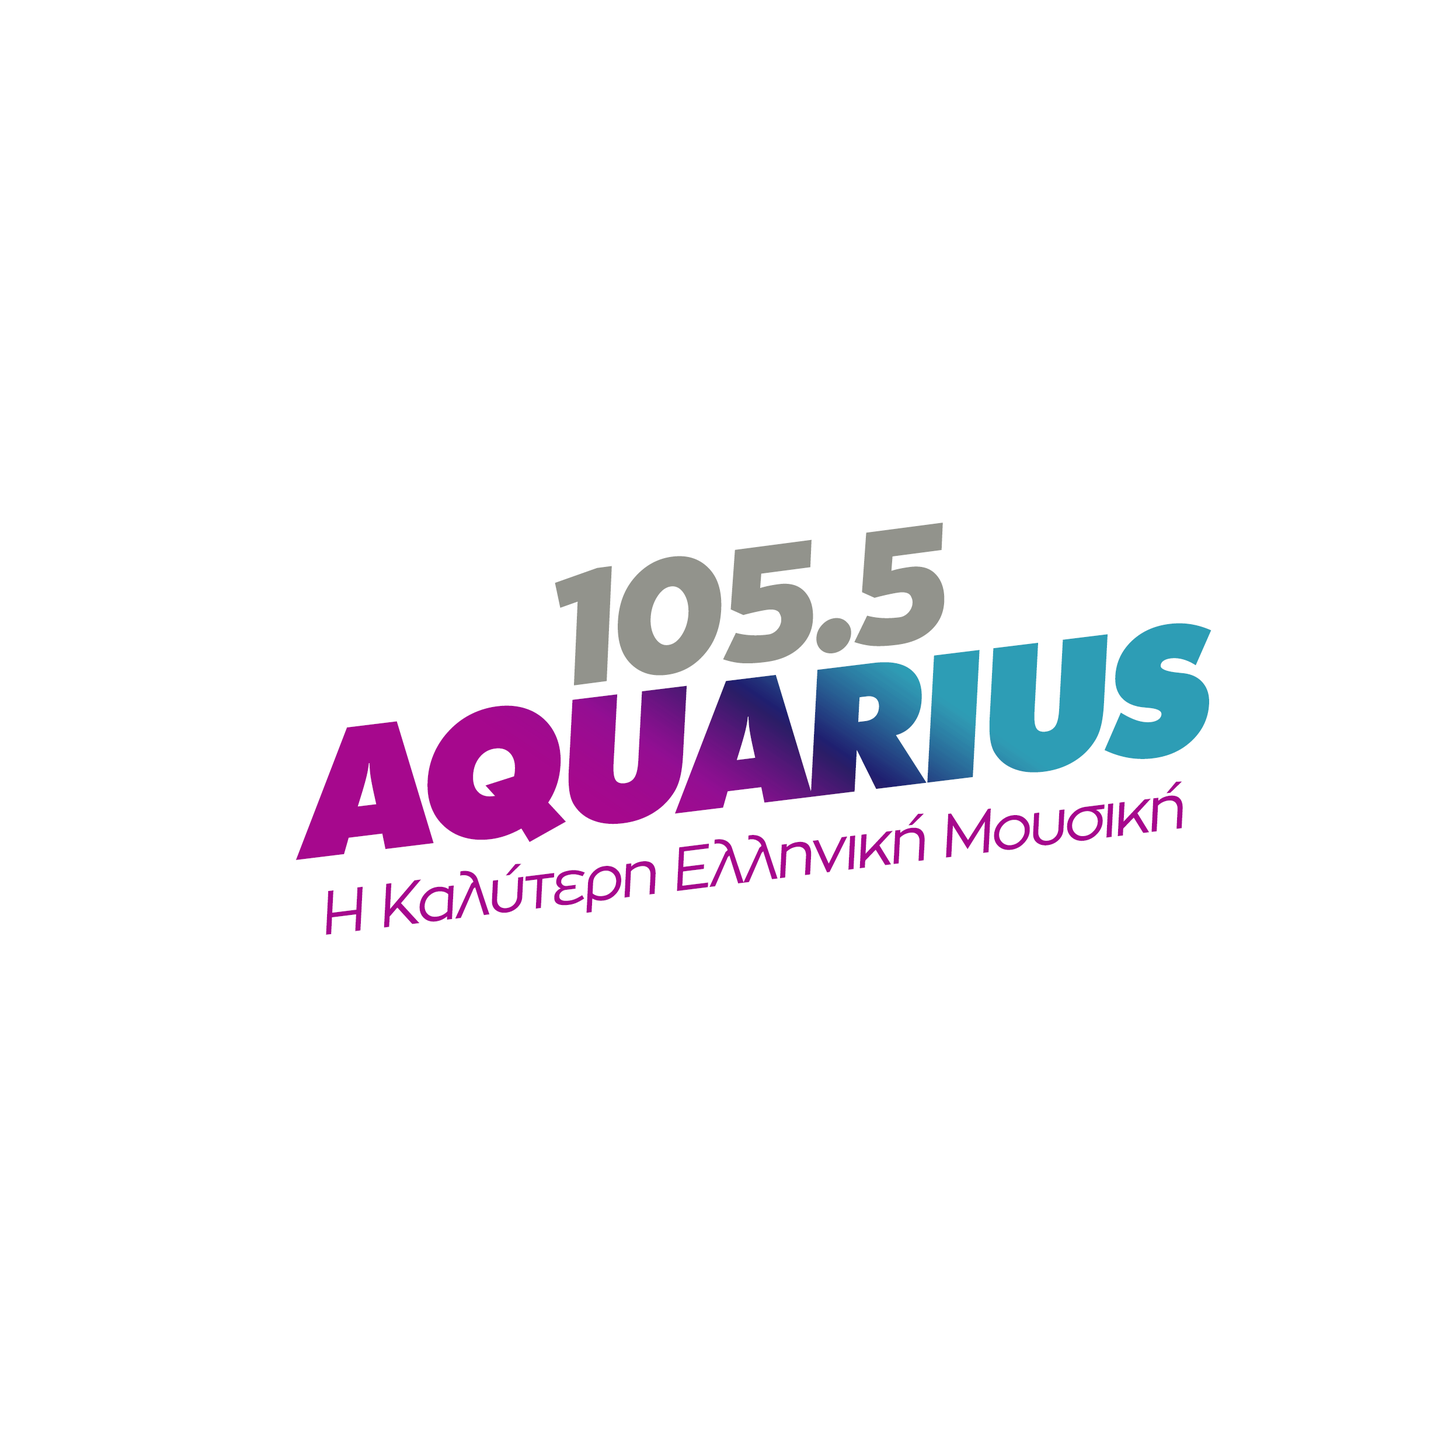 AQUARIUS FM 105,5 GREECE